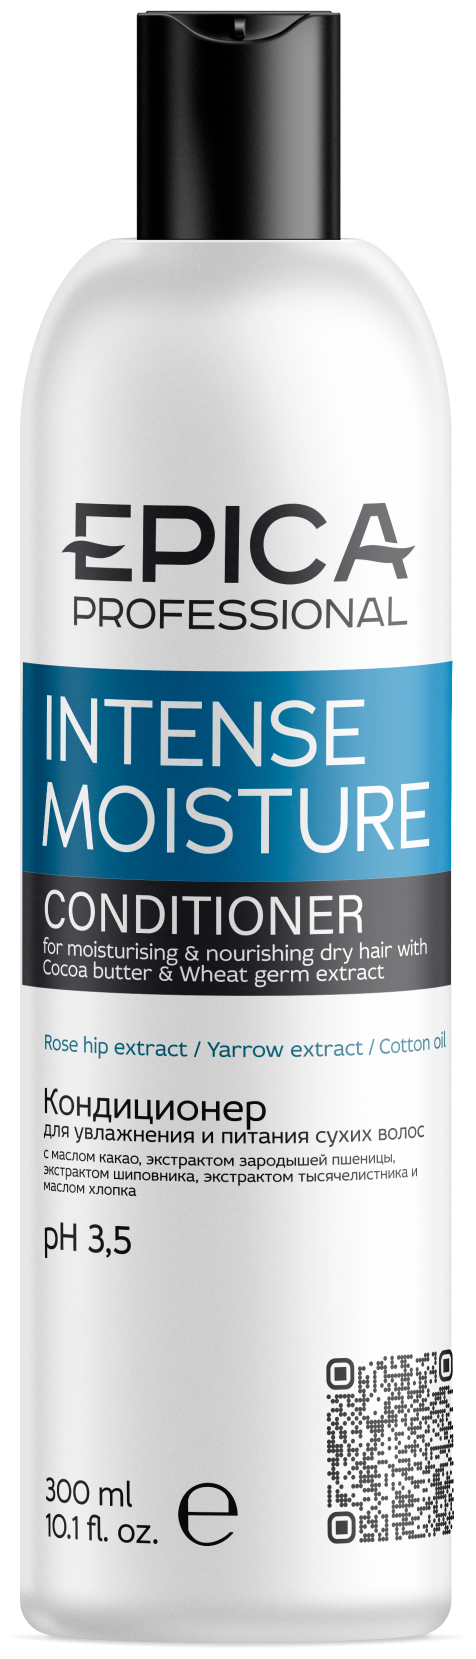 Epica Intense Moisture Conditioner - Кондиционер для увлажнения и питания сухих волос, 300 мл